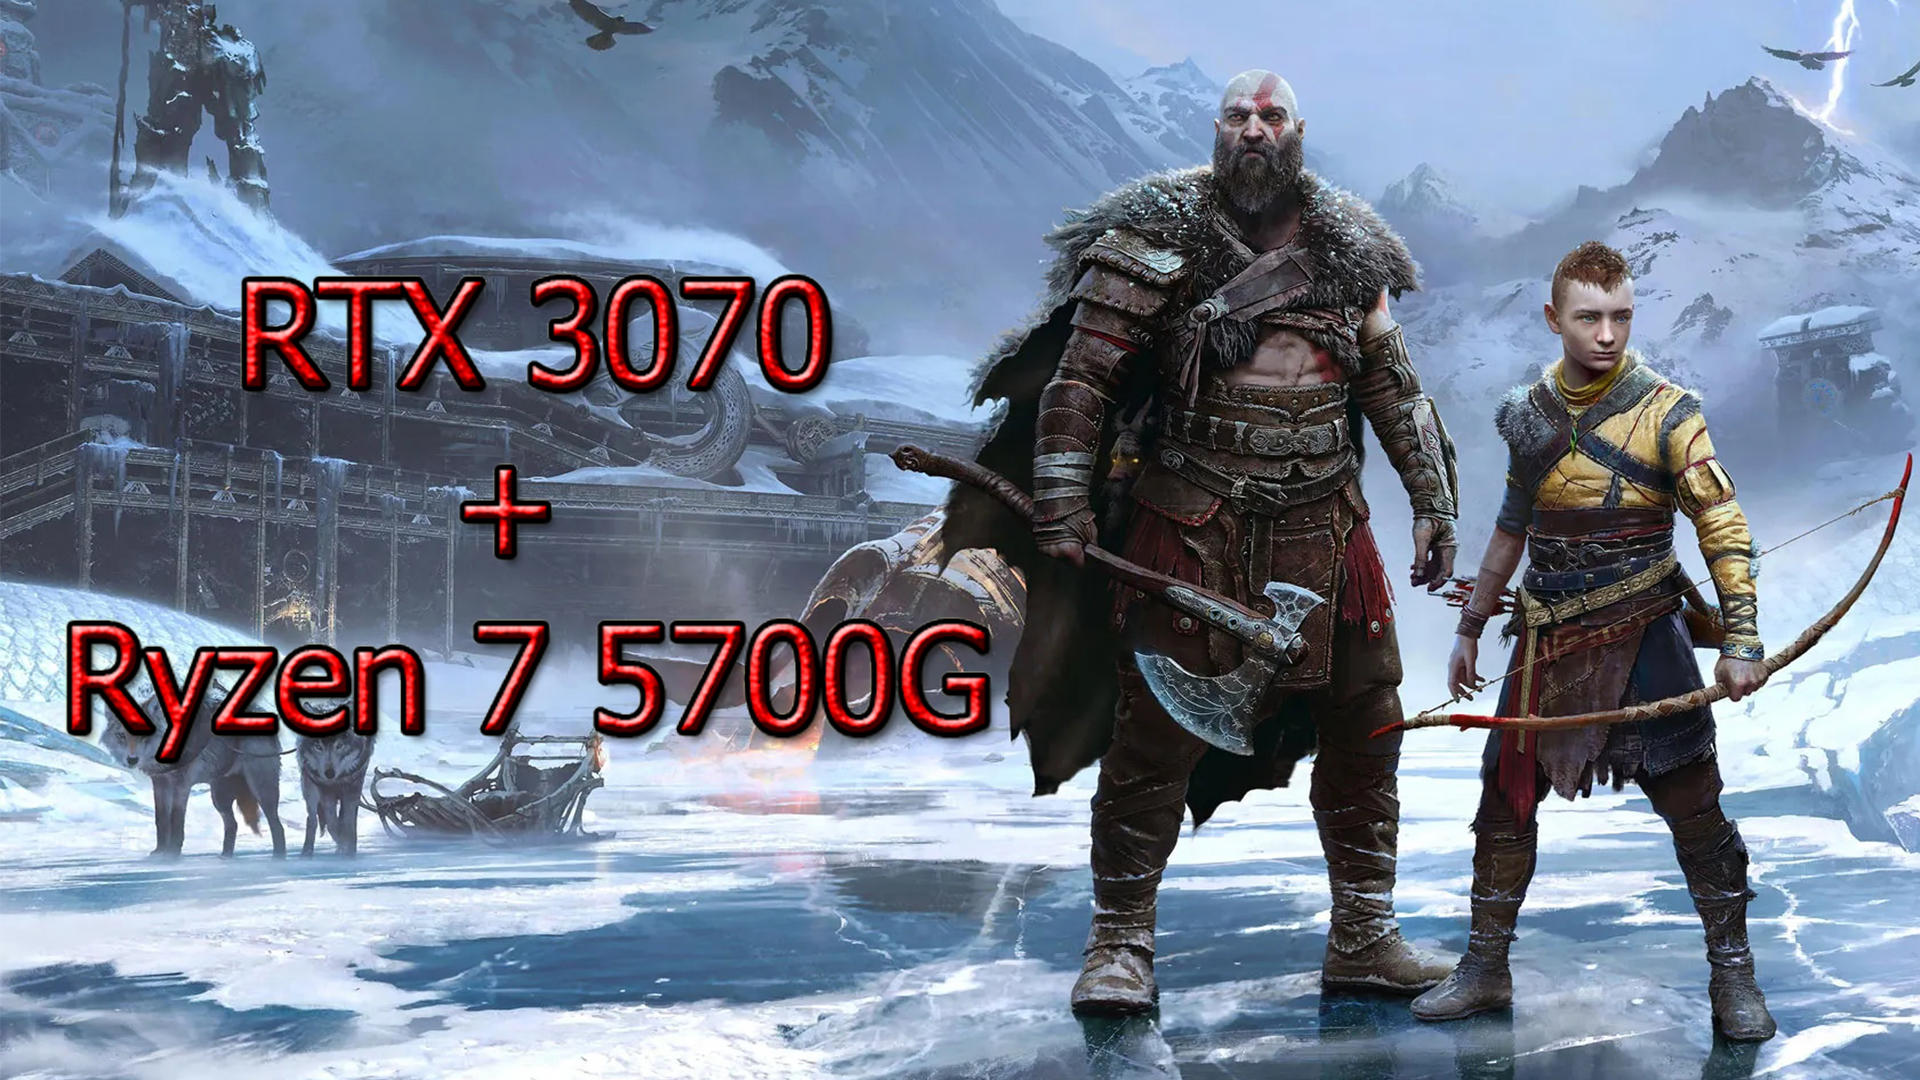 God of War Ragnarök RTX 3070+Ryzen 7 5700G